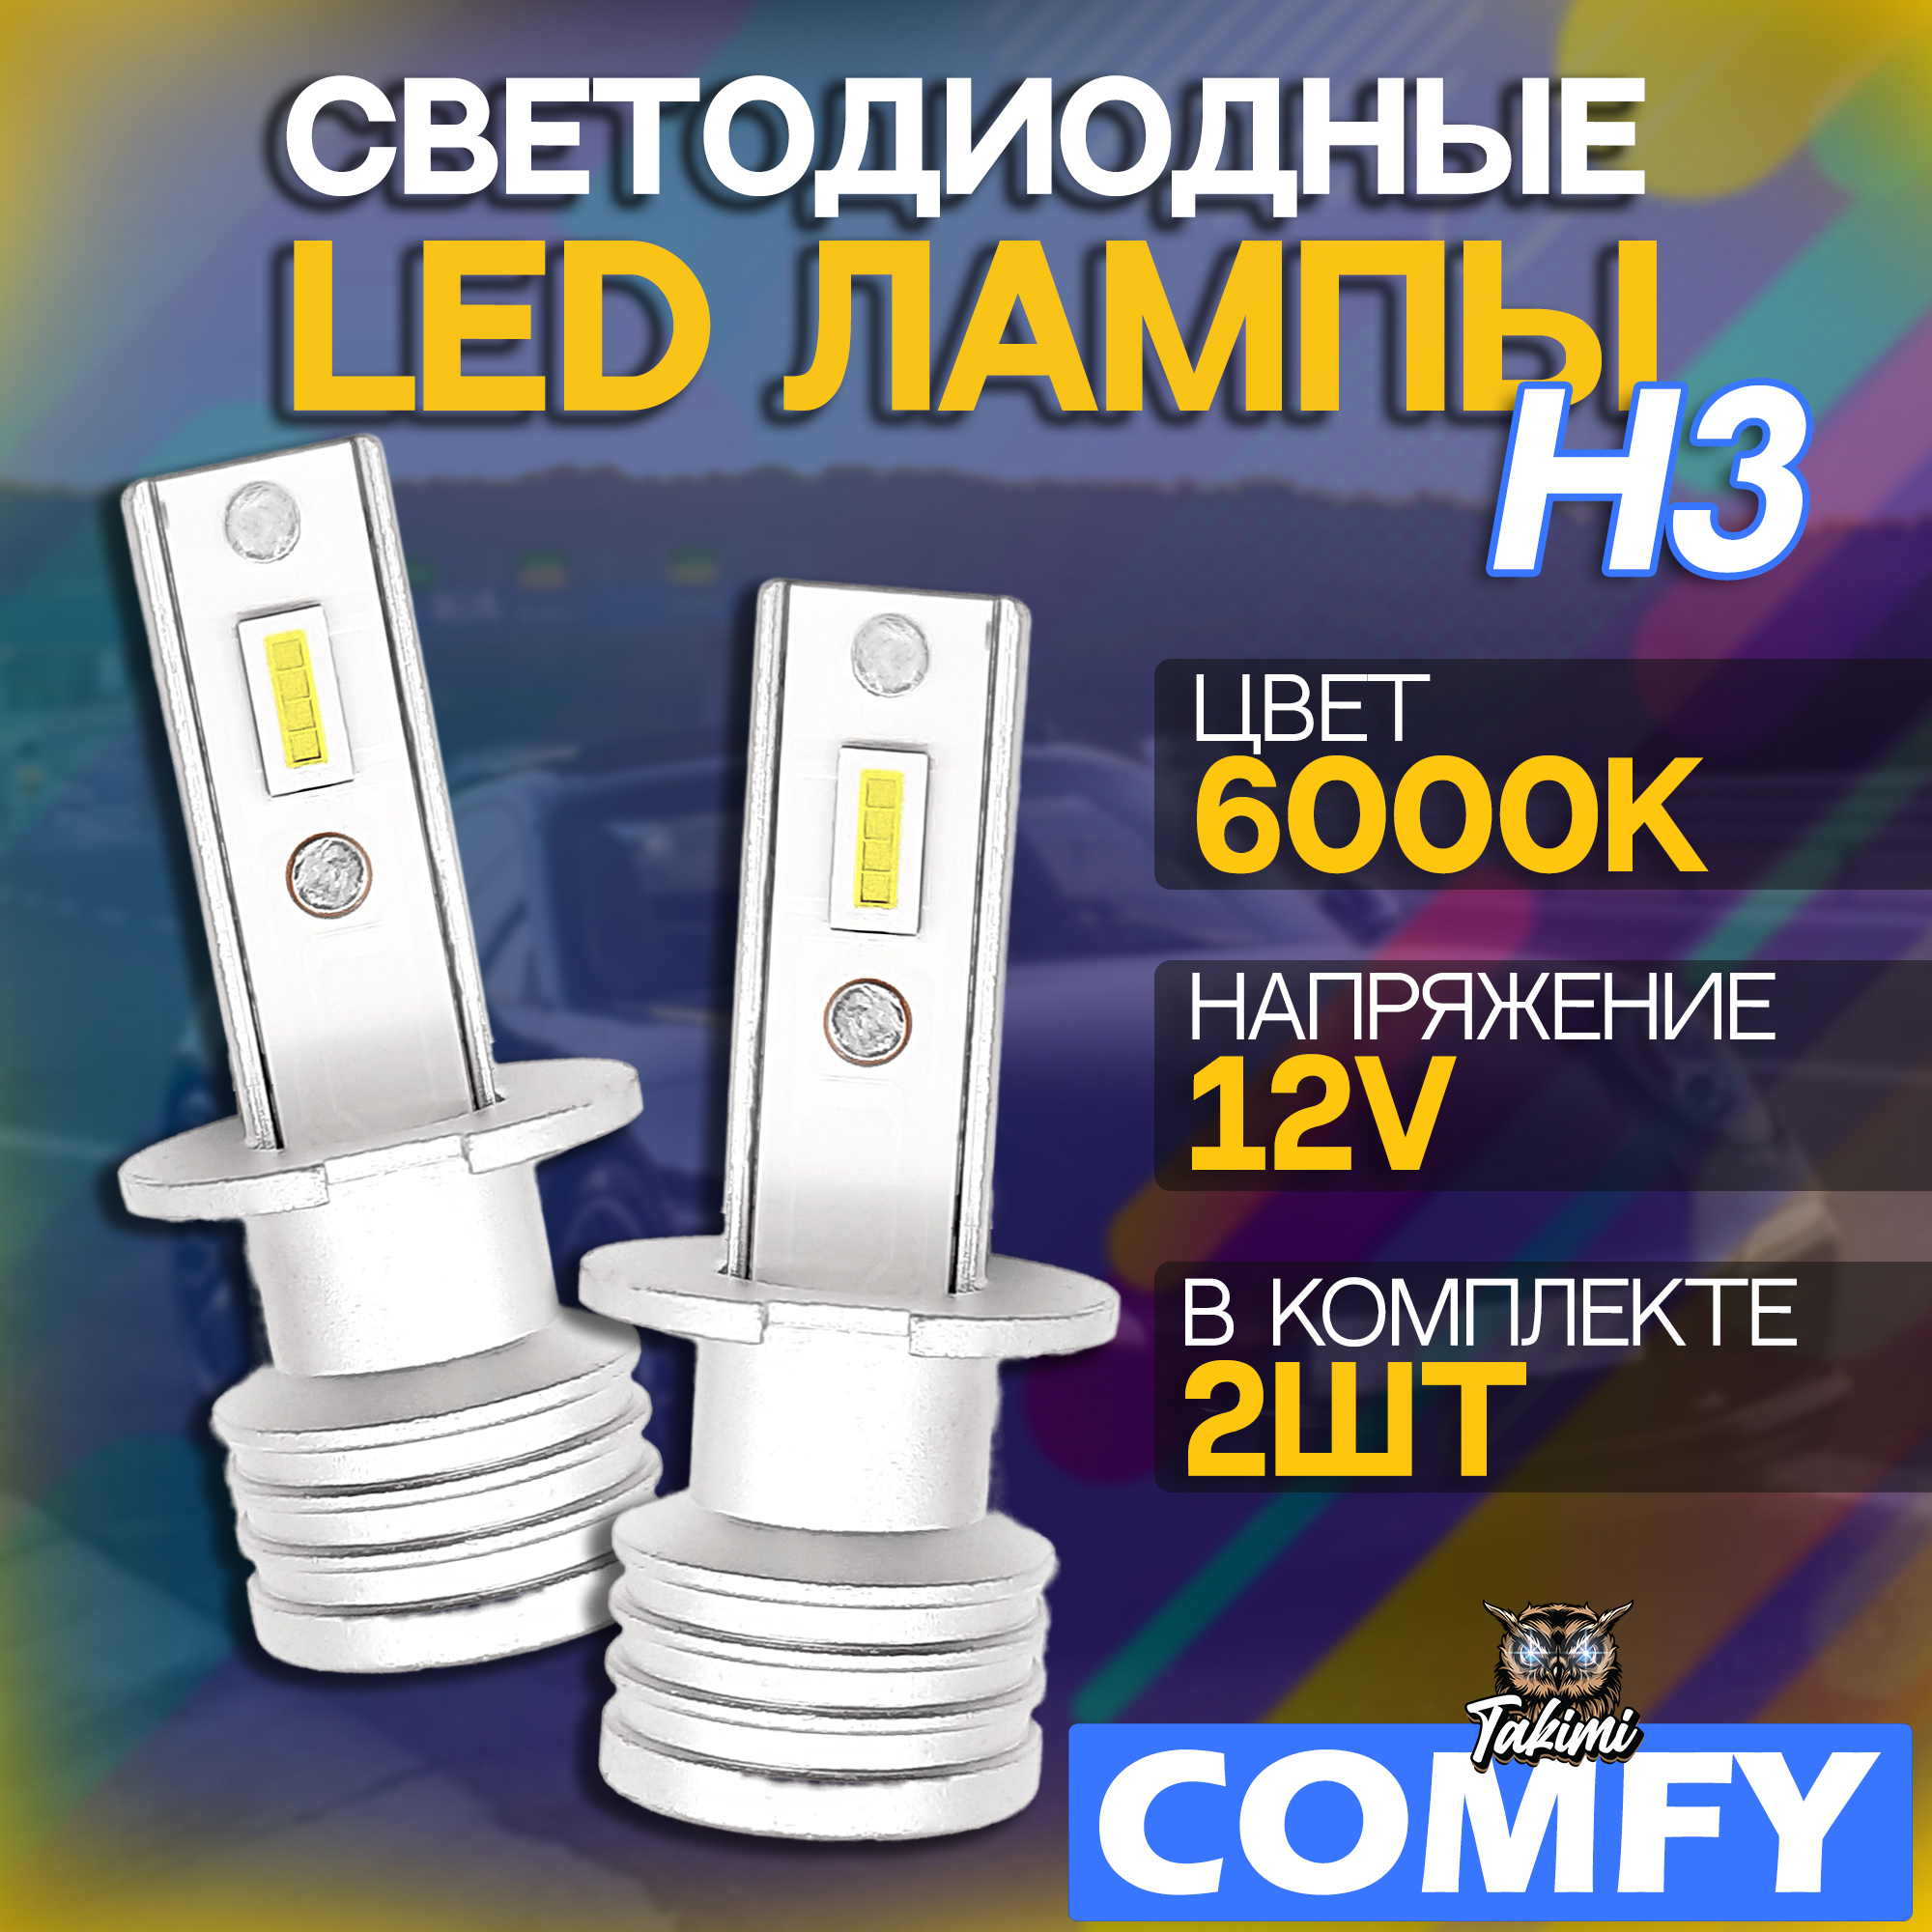 Светодиодные LED автомобильные лампы TaKiMi Comfy H3 6000K 12V